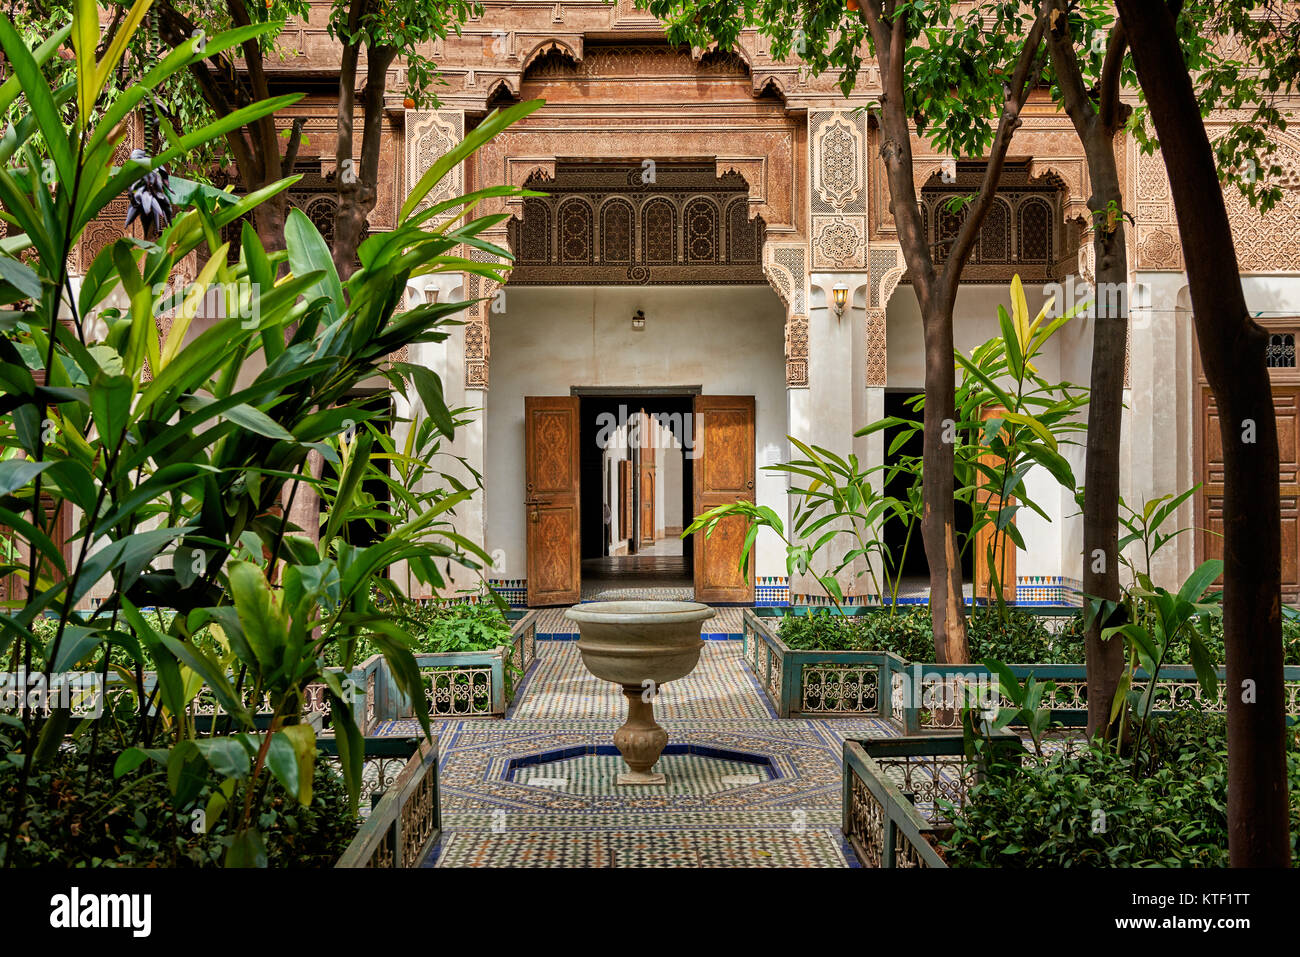 Cortile interno decorato in stile moresco del Palazzo Bahia, Marrakech, Marocco, Africa Foto Stock